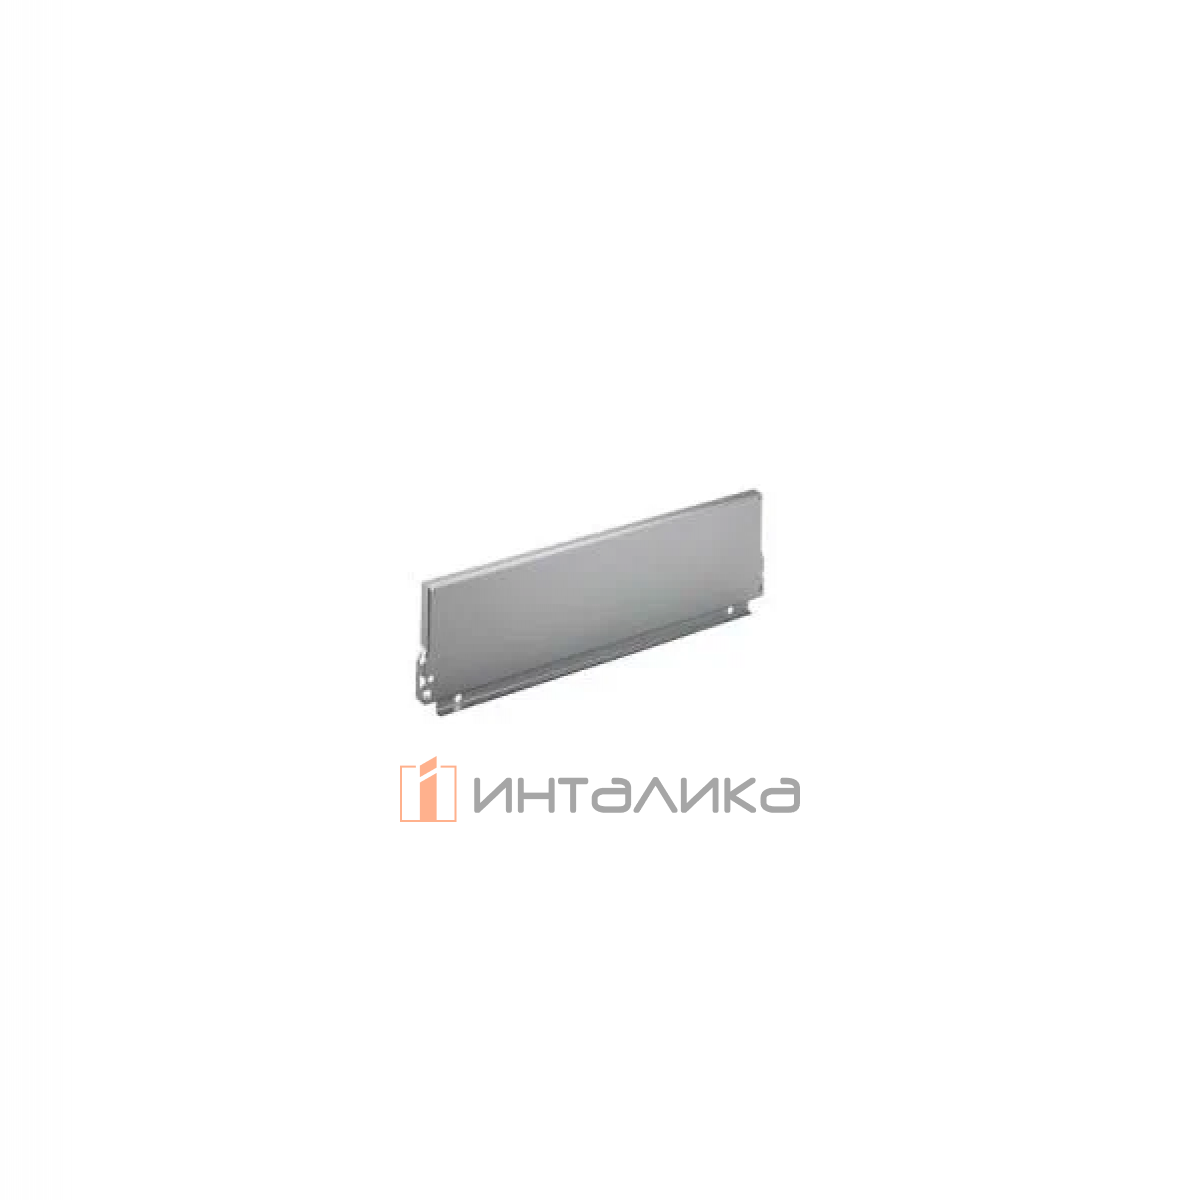 Задняя стенка HETTICH InnoTech/InnoTech Atira, высота 144мм, H800 мм, сталь, цвет серебристый, (V10)